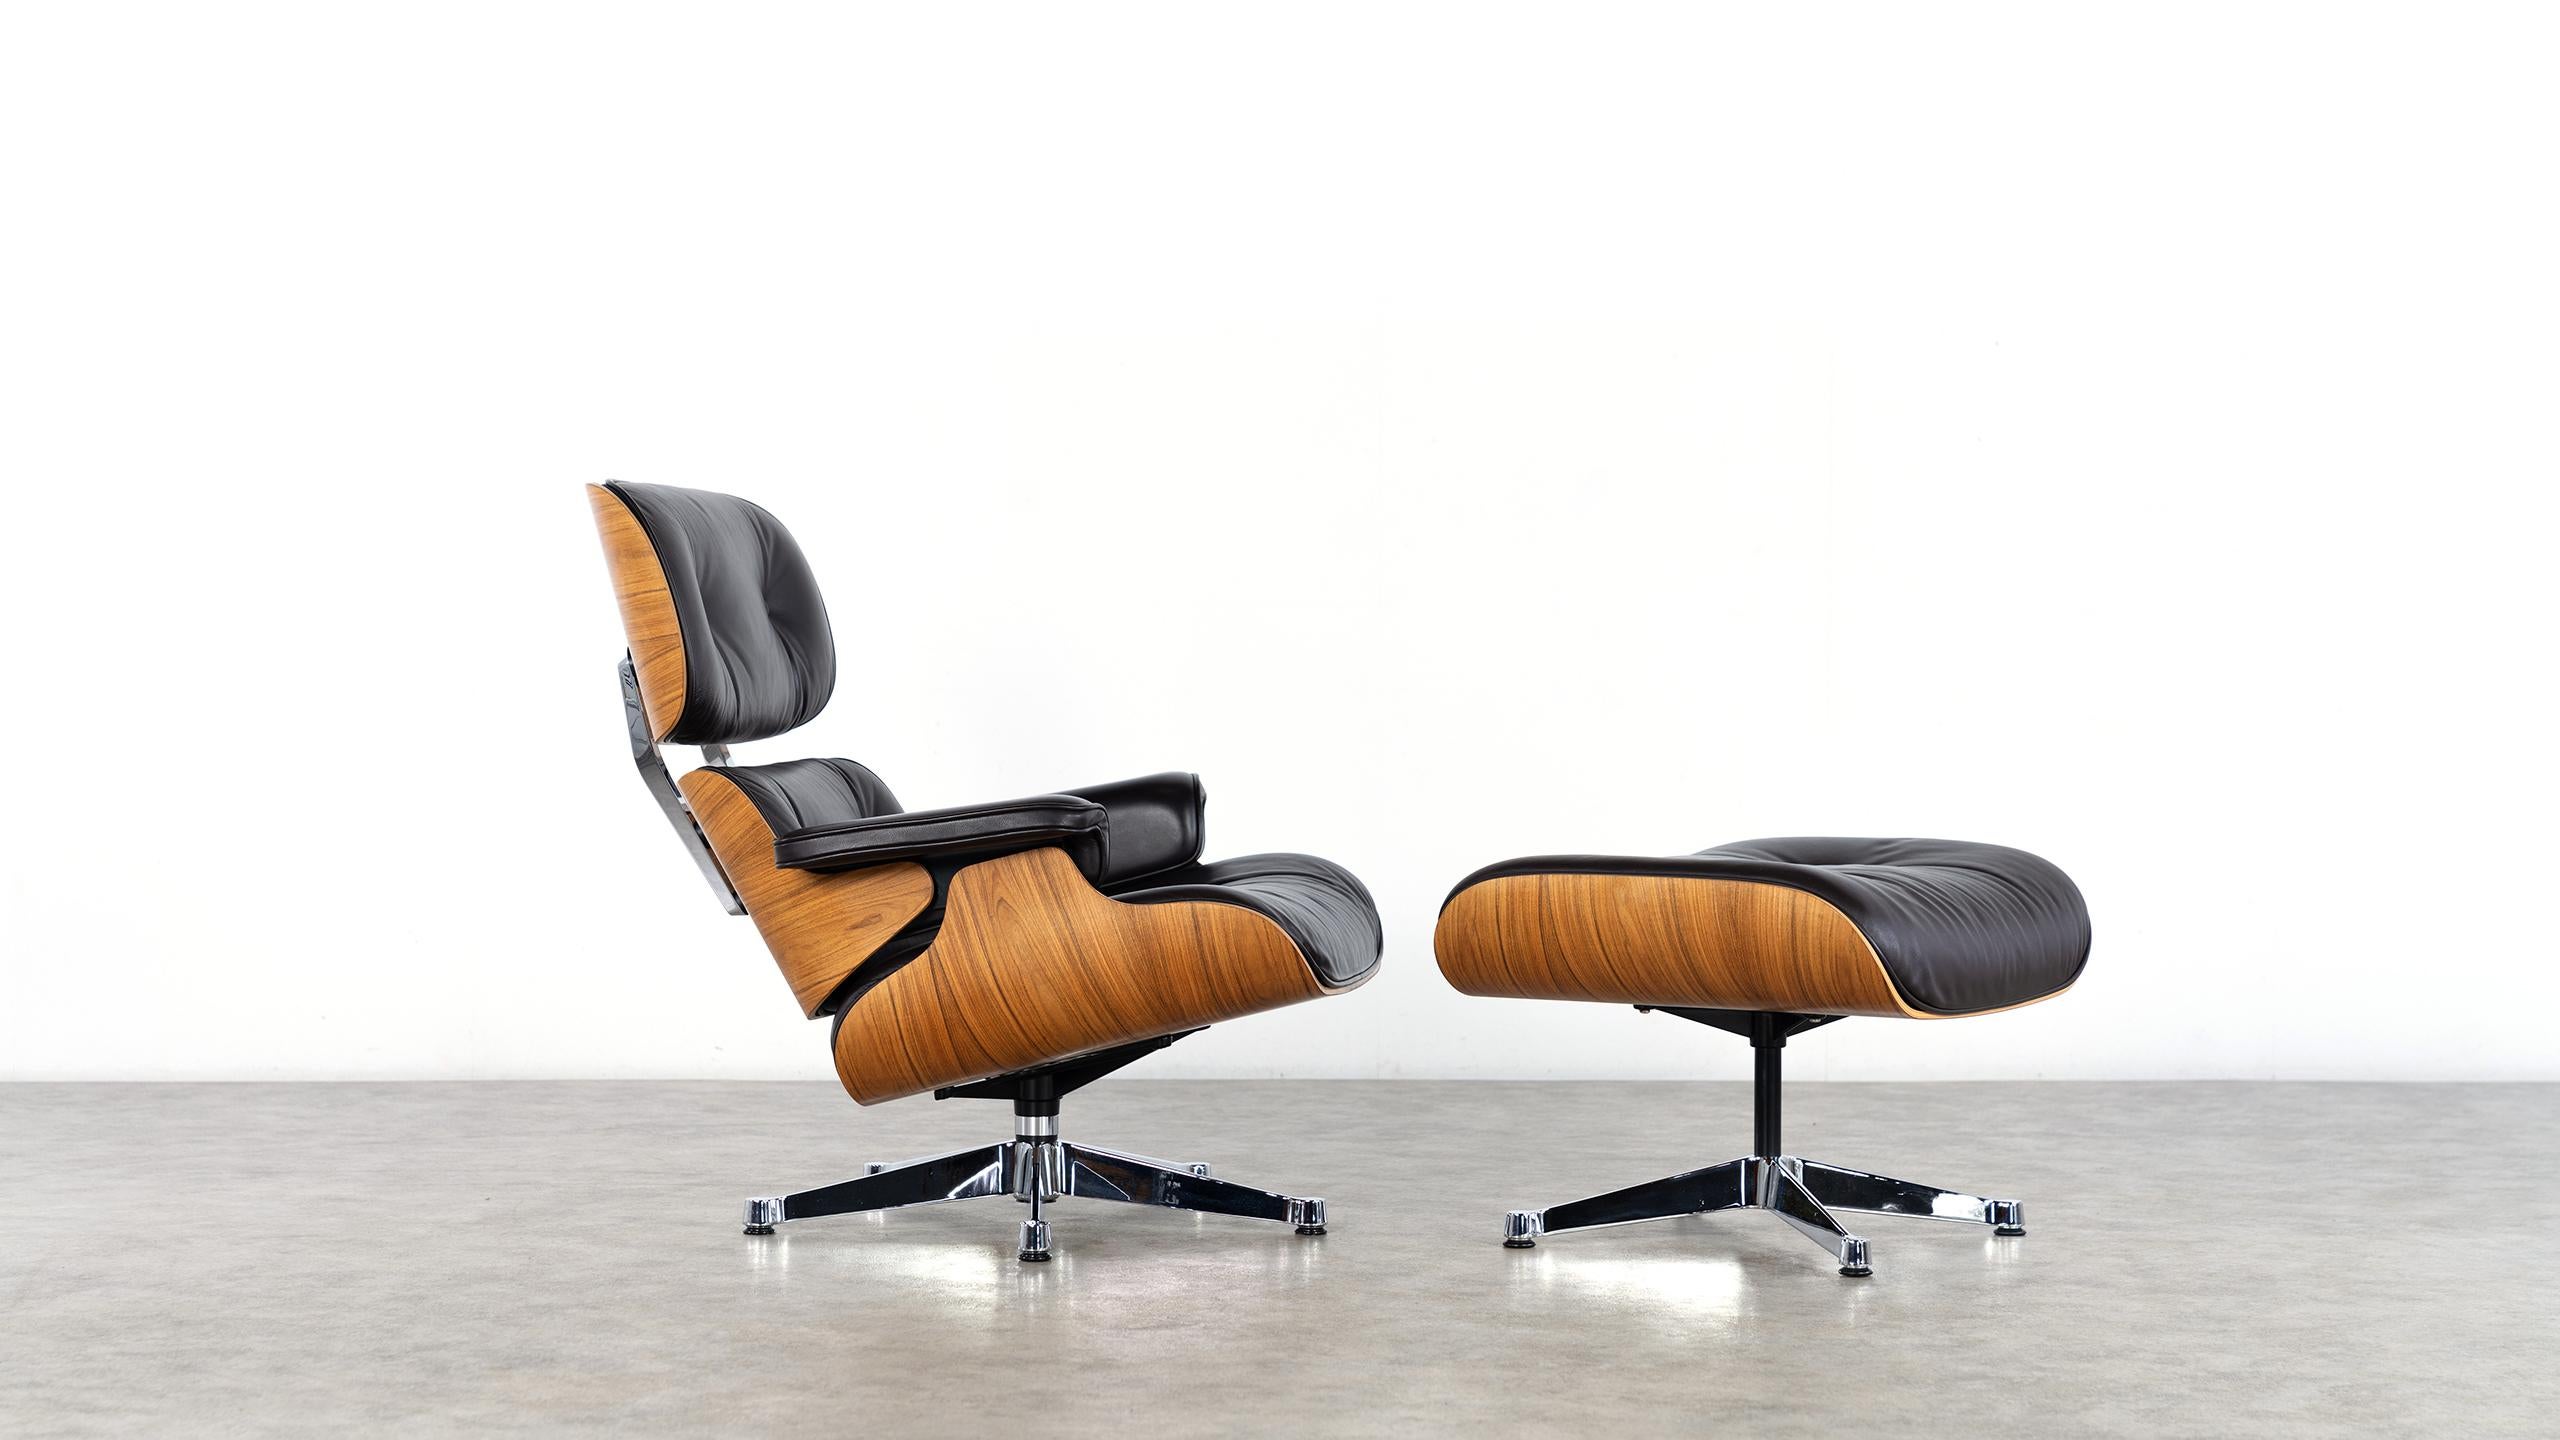 Charles & Ray Eames - Lounge Chair & Ottoman 2006 by Vitra, certifié en bois de rose

Conçue en 1956, cette pièce a été fabriquée par Vitra en 2006.
Facture originale, certificat de conformité, etc. disponibles.

Les coques en palissandre de Santos